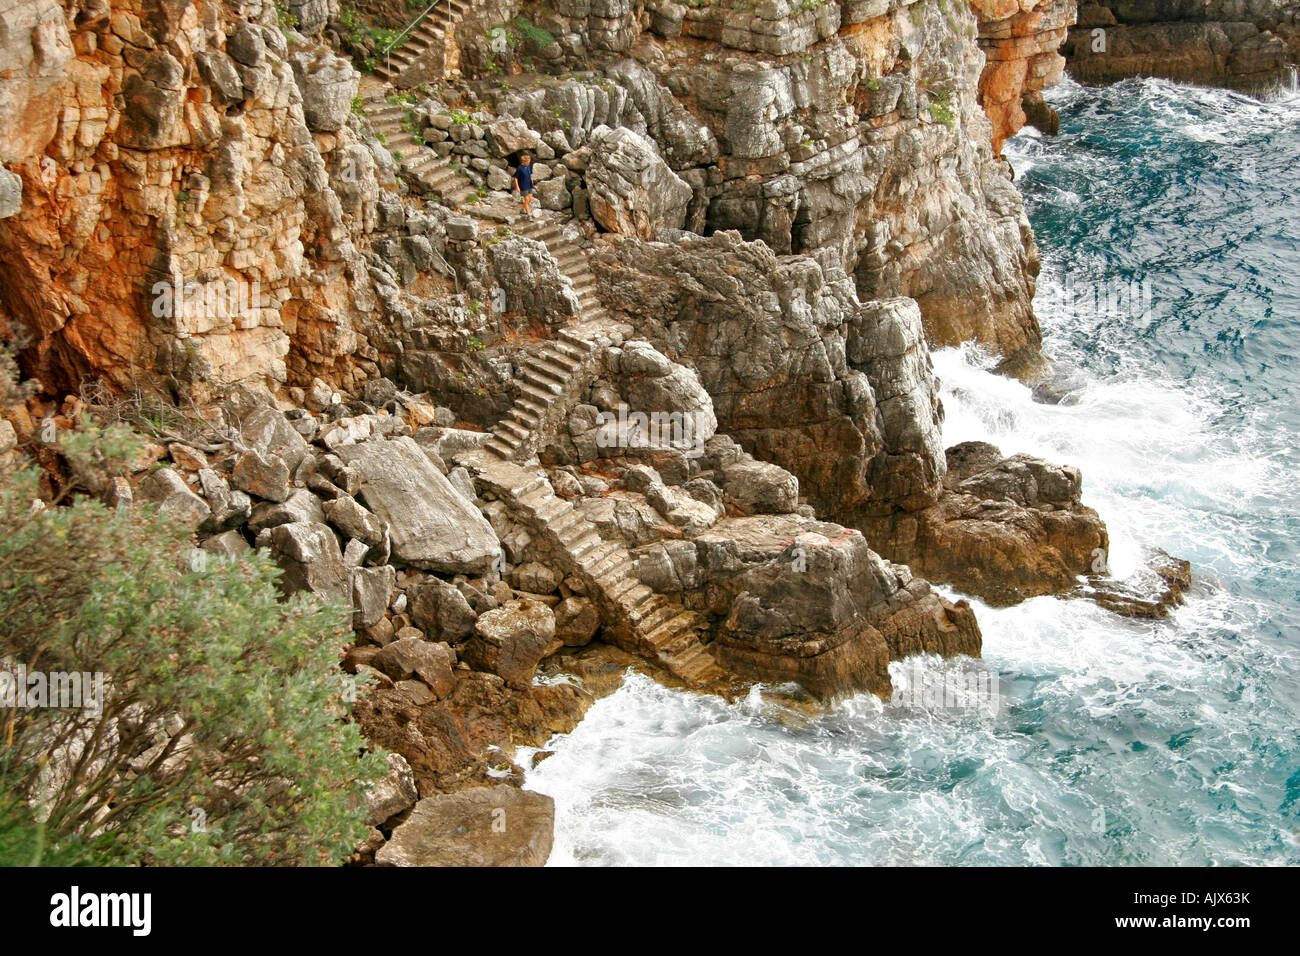 Kroatien, Steintreppe Gornje Celo Felsenkueste Insel Kolocep | Croatia, Stone stairs Gornje Celo rocky coast Island Kolocep Stock Photo